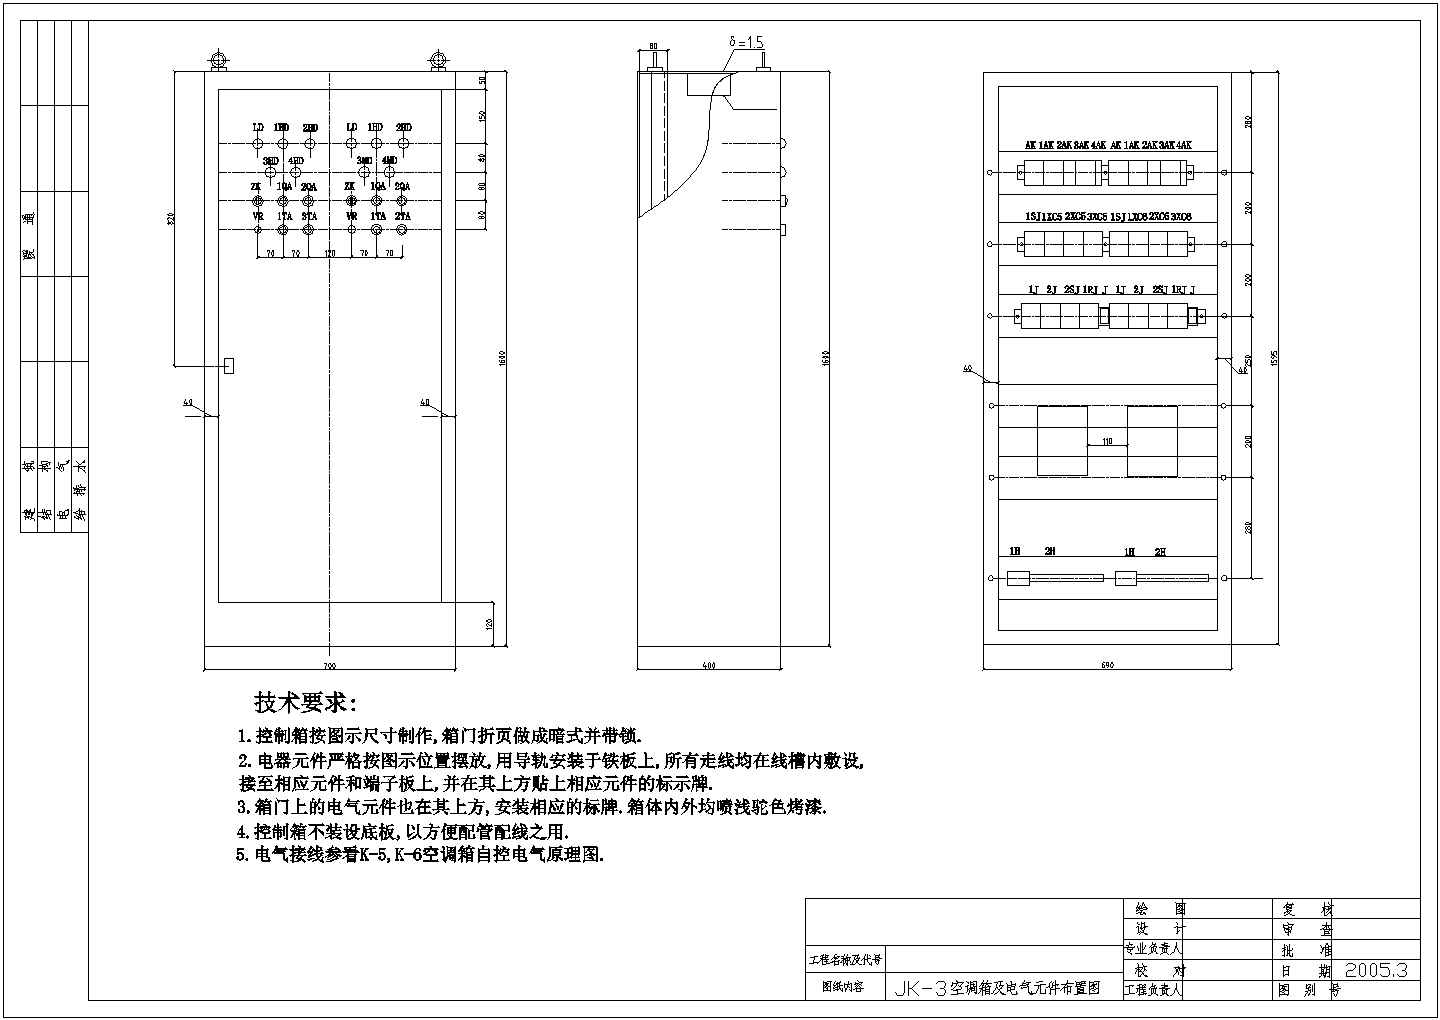 【北京市】某医院手术室电控、电源、插座箱元件布置图